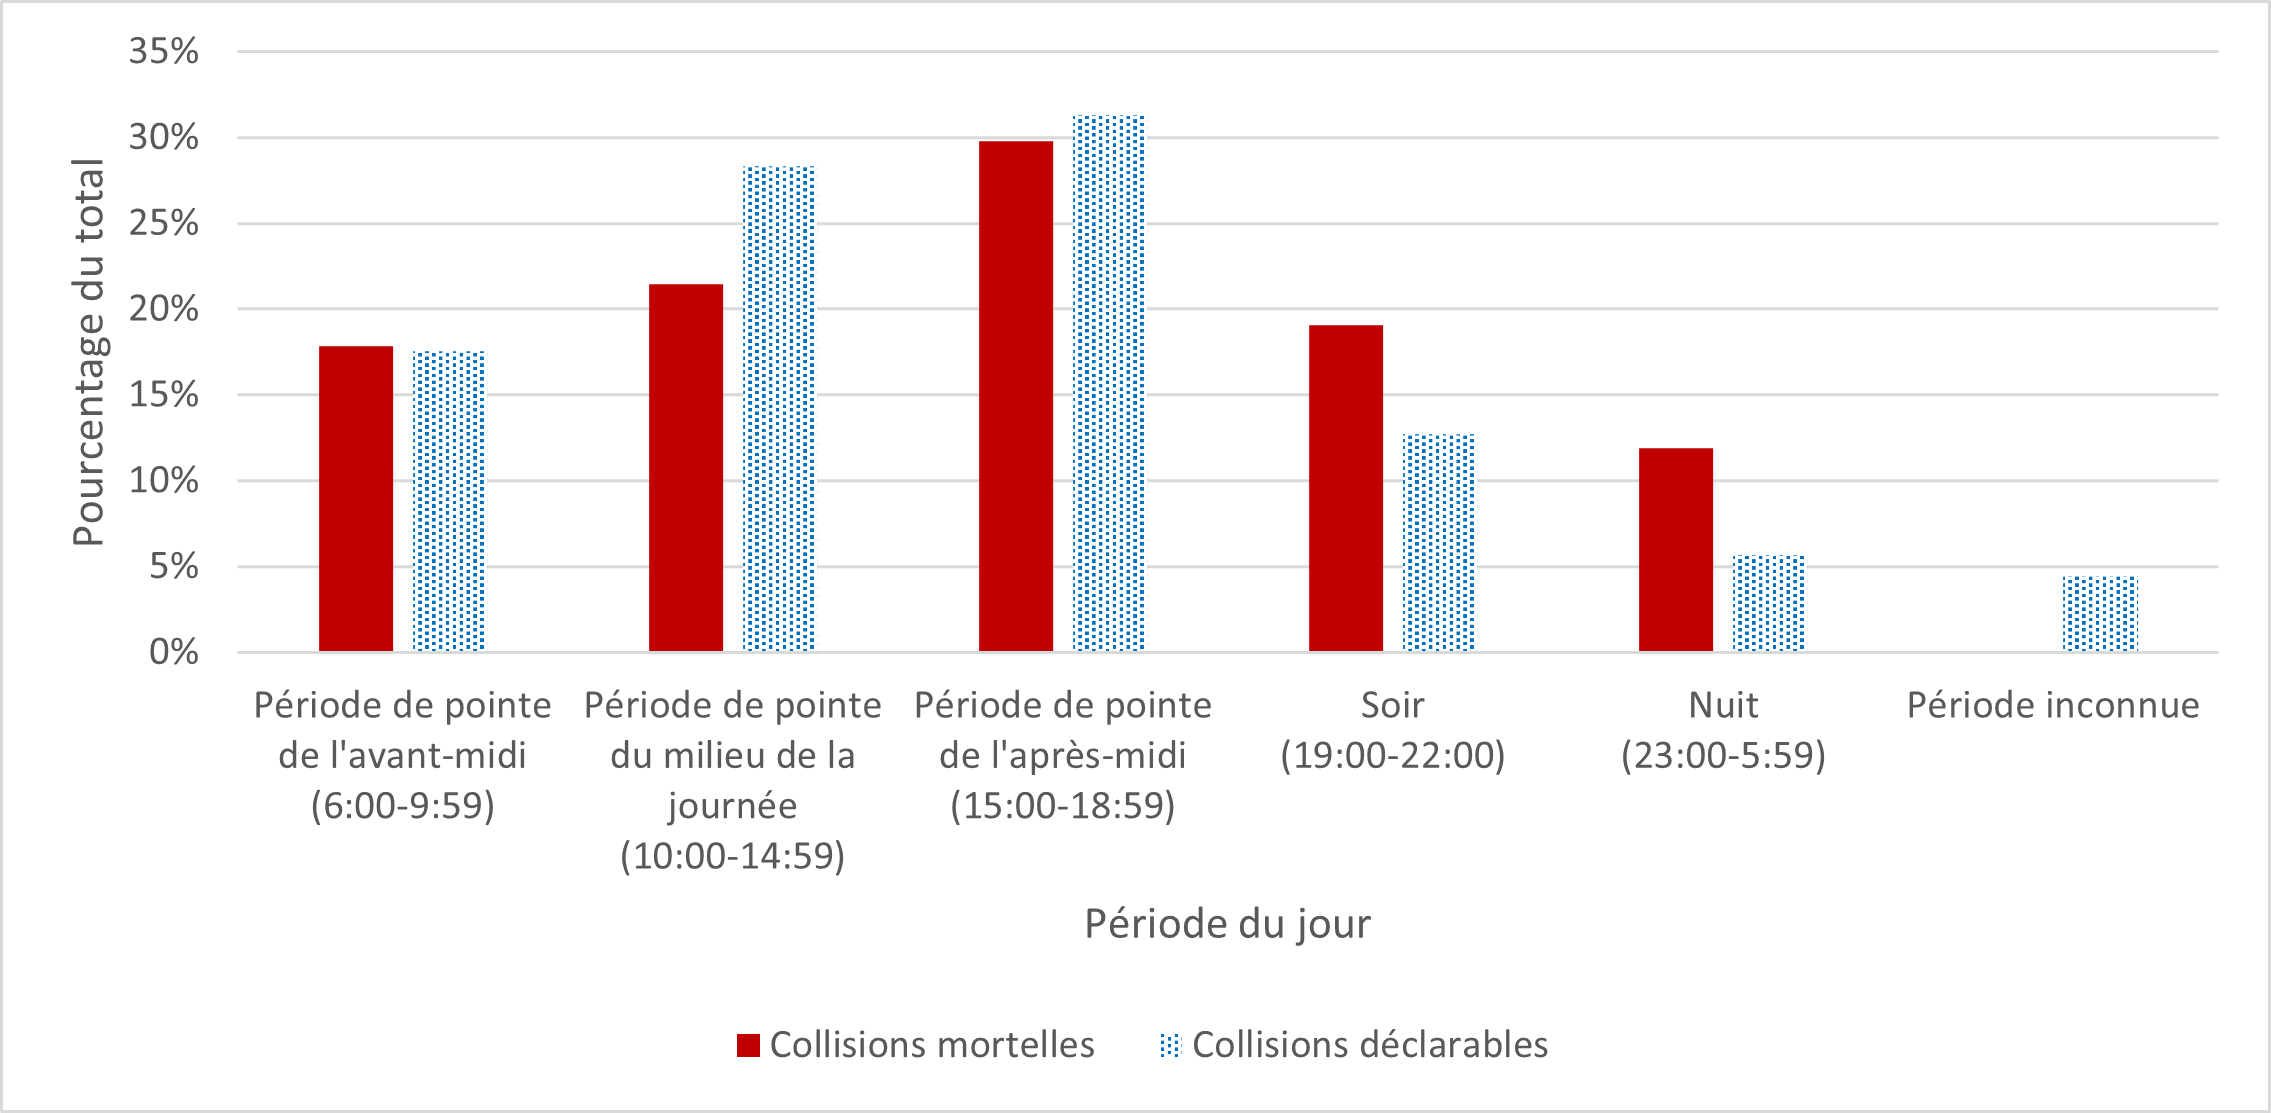 La figure 8 montre le nombre de collisions mortelles et de collisions déclarables selon la période du jour en pourcentages.